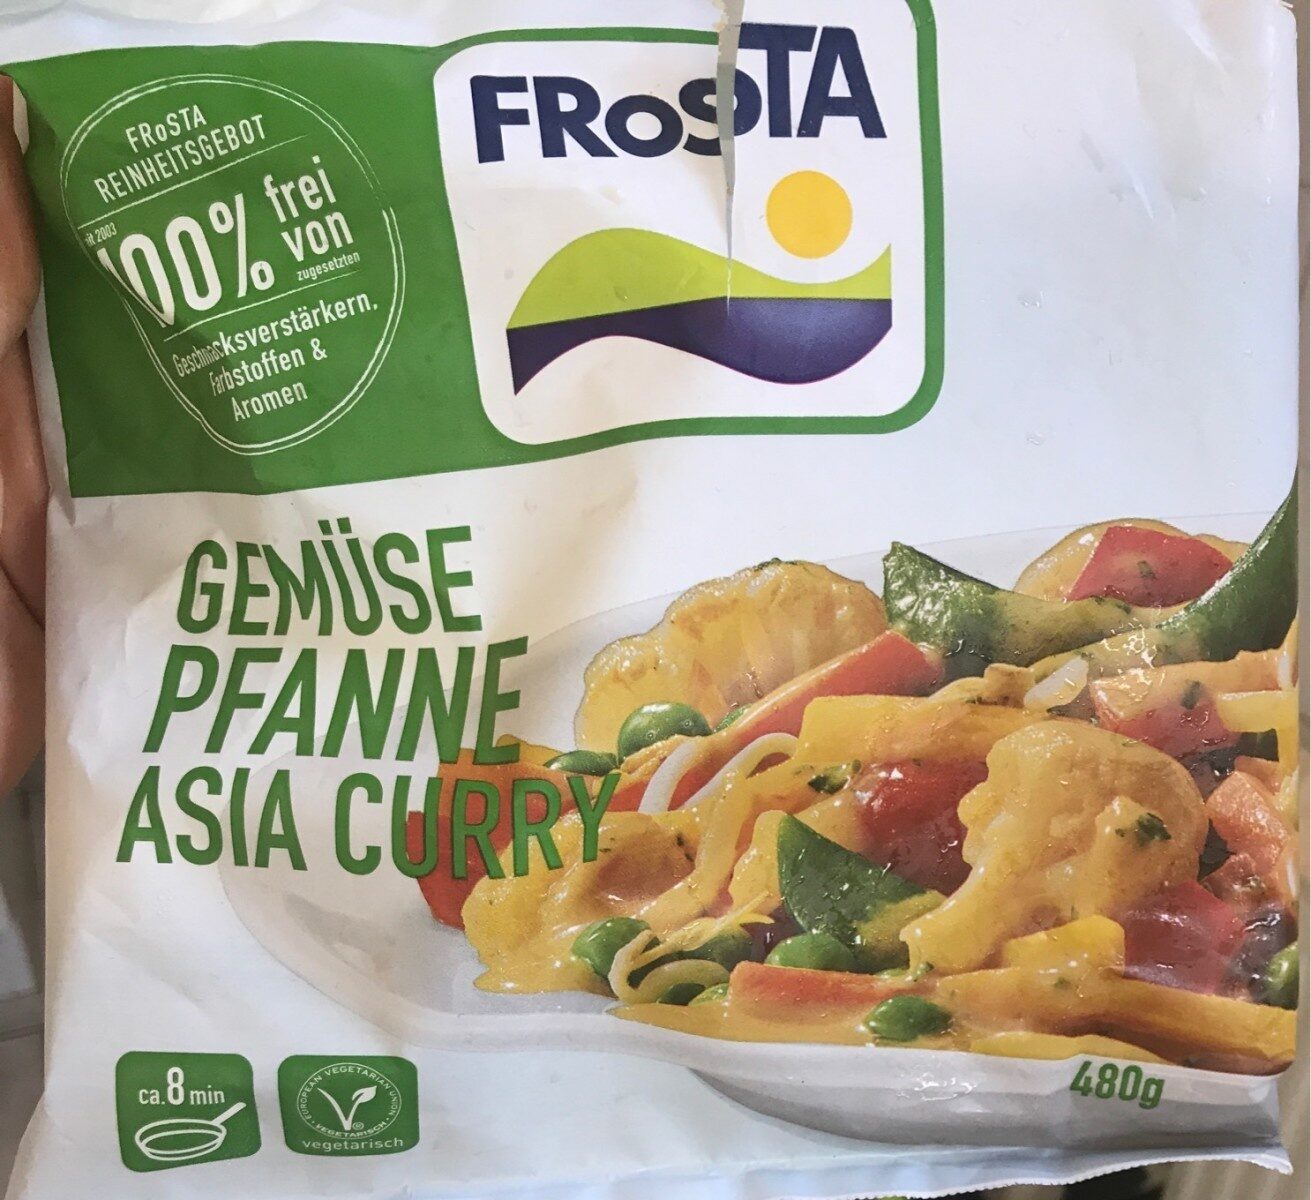 Gemüsepfanne Asia Curry - Product - de